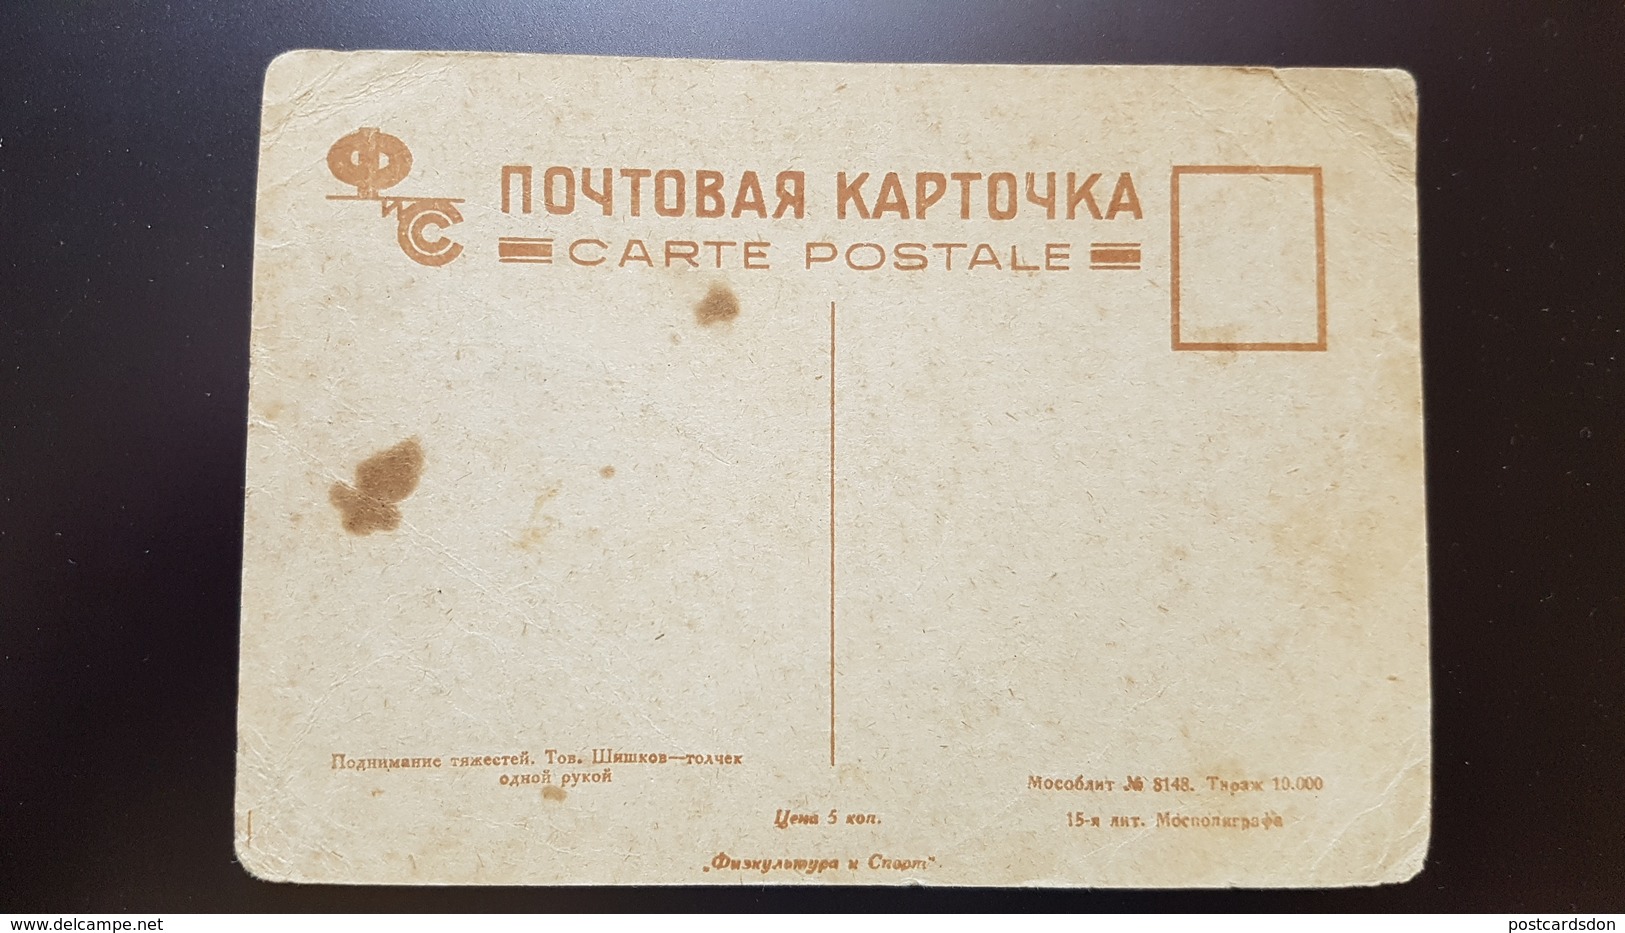 SOVIET SPORT. Weightlifter Shishkov. OLD Postcard 1930s - USSR WEIGHTLIFTING - Haltérophilie